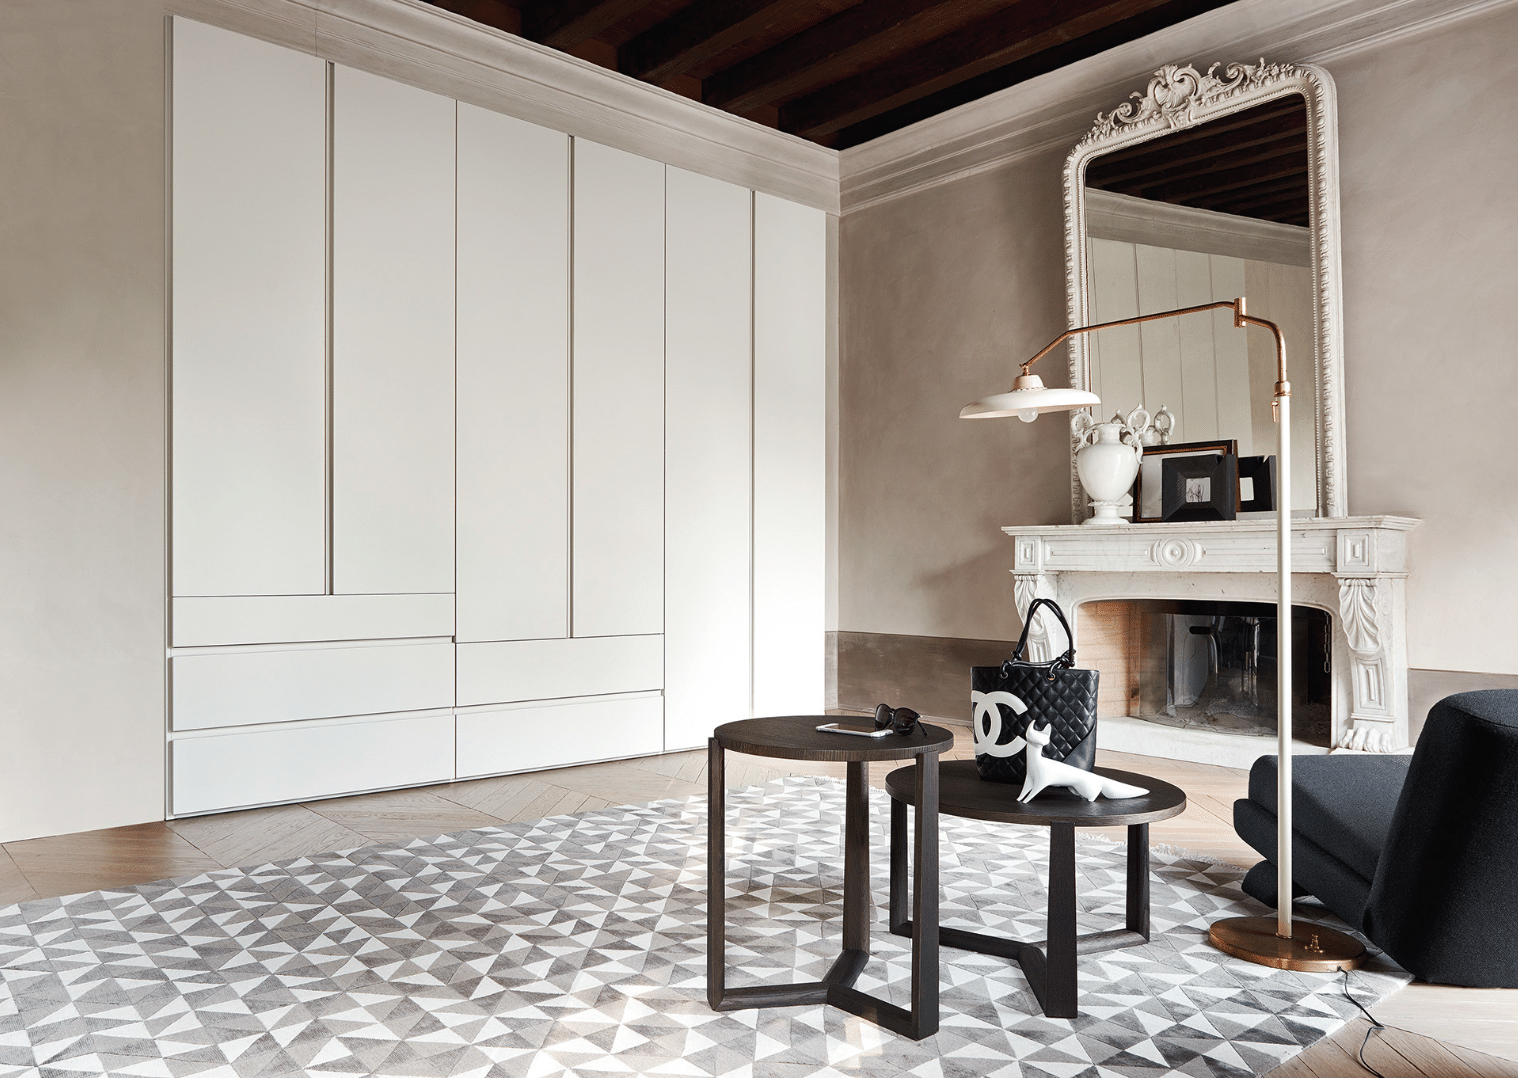 WOHNHAUS Grill & Ronacher zeigt einen eleganten Schrank mit weißen Türen von San Giacomo.